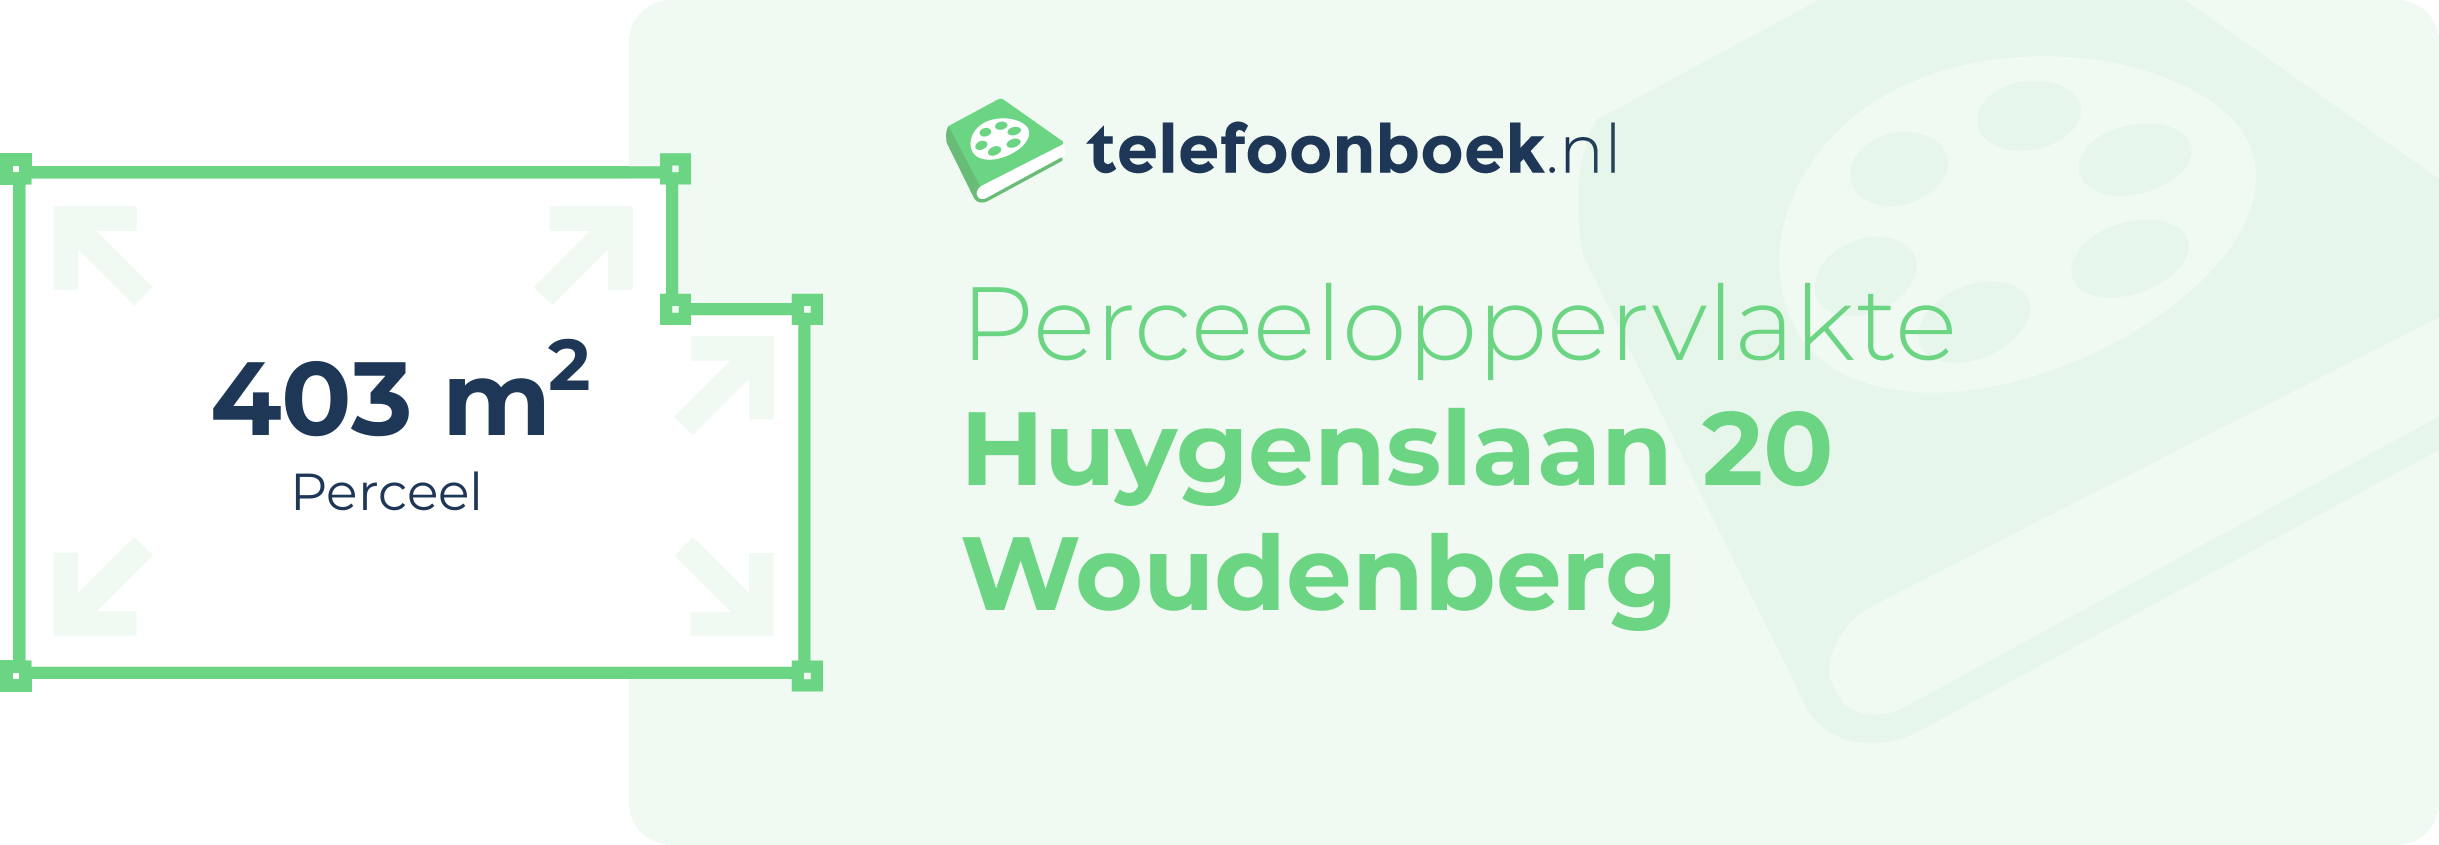 Perceeloppervlakte Huygenslaan 20 Woudenberg